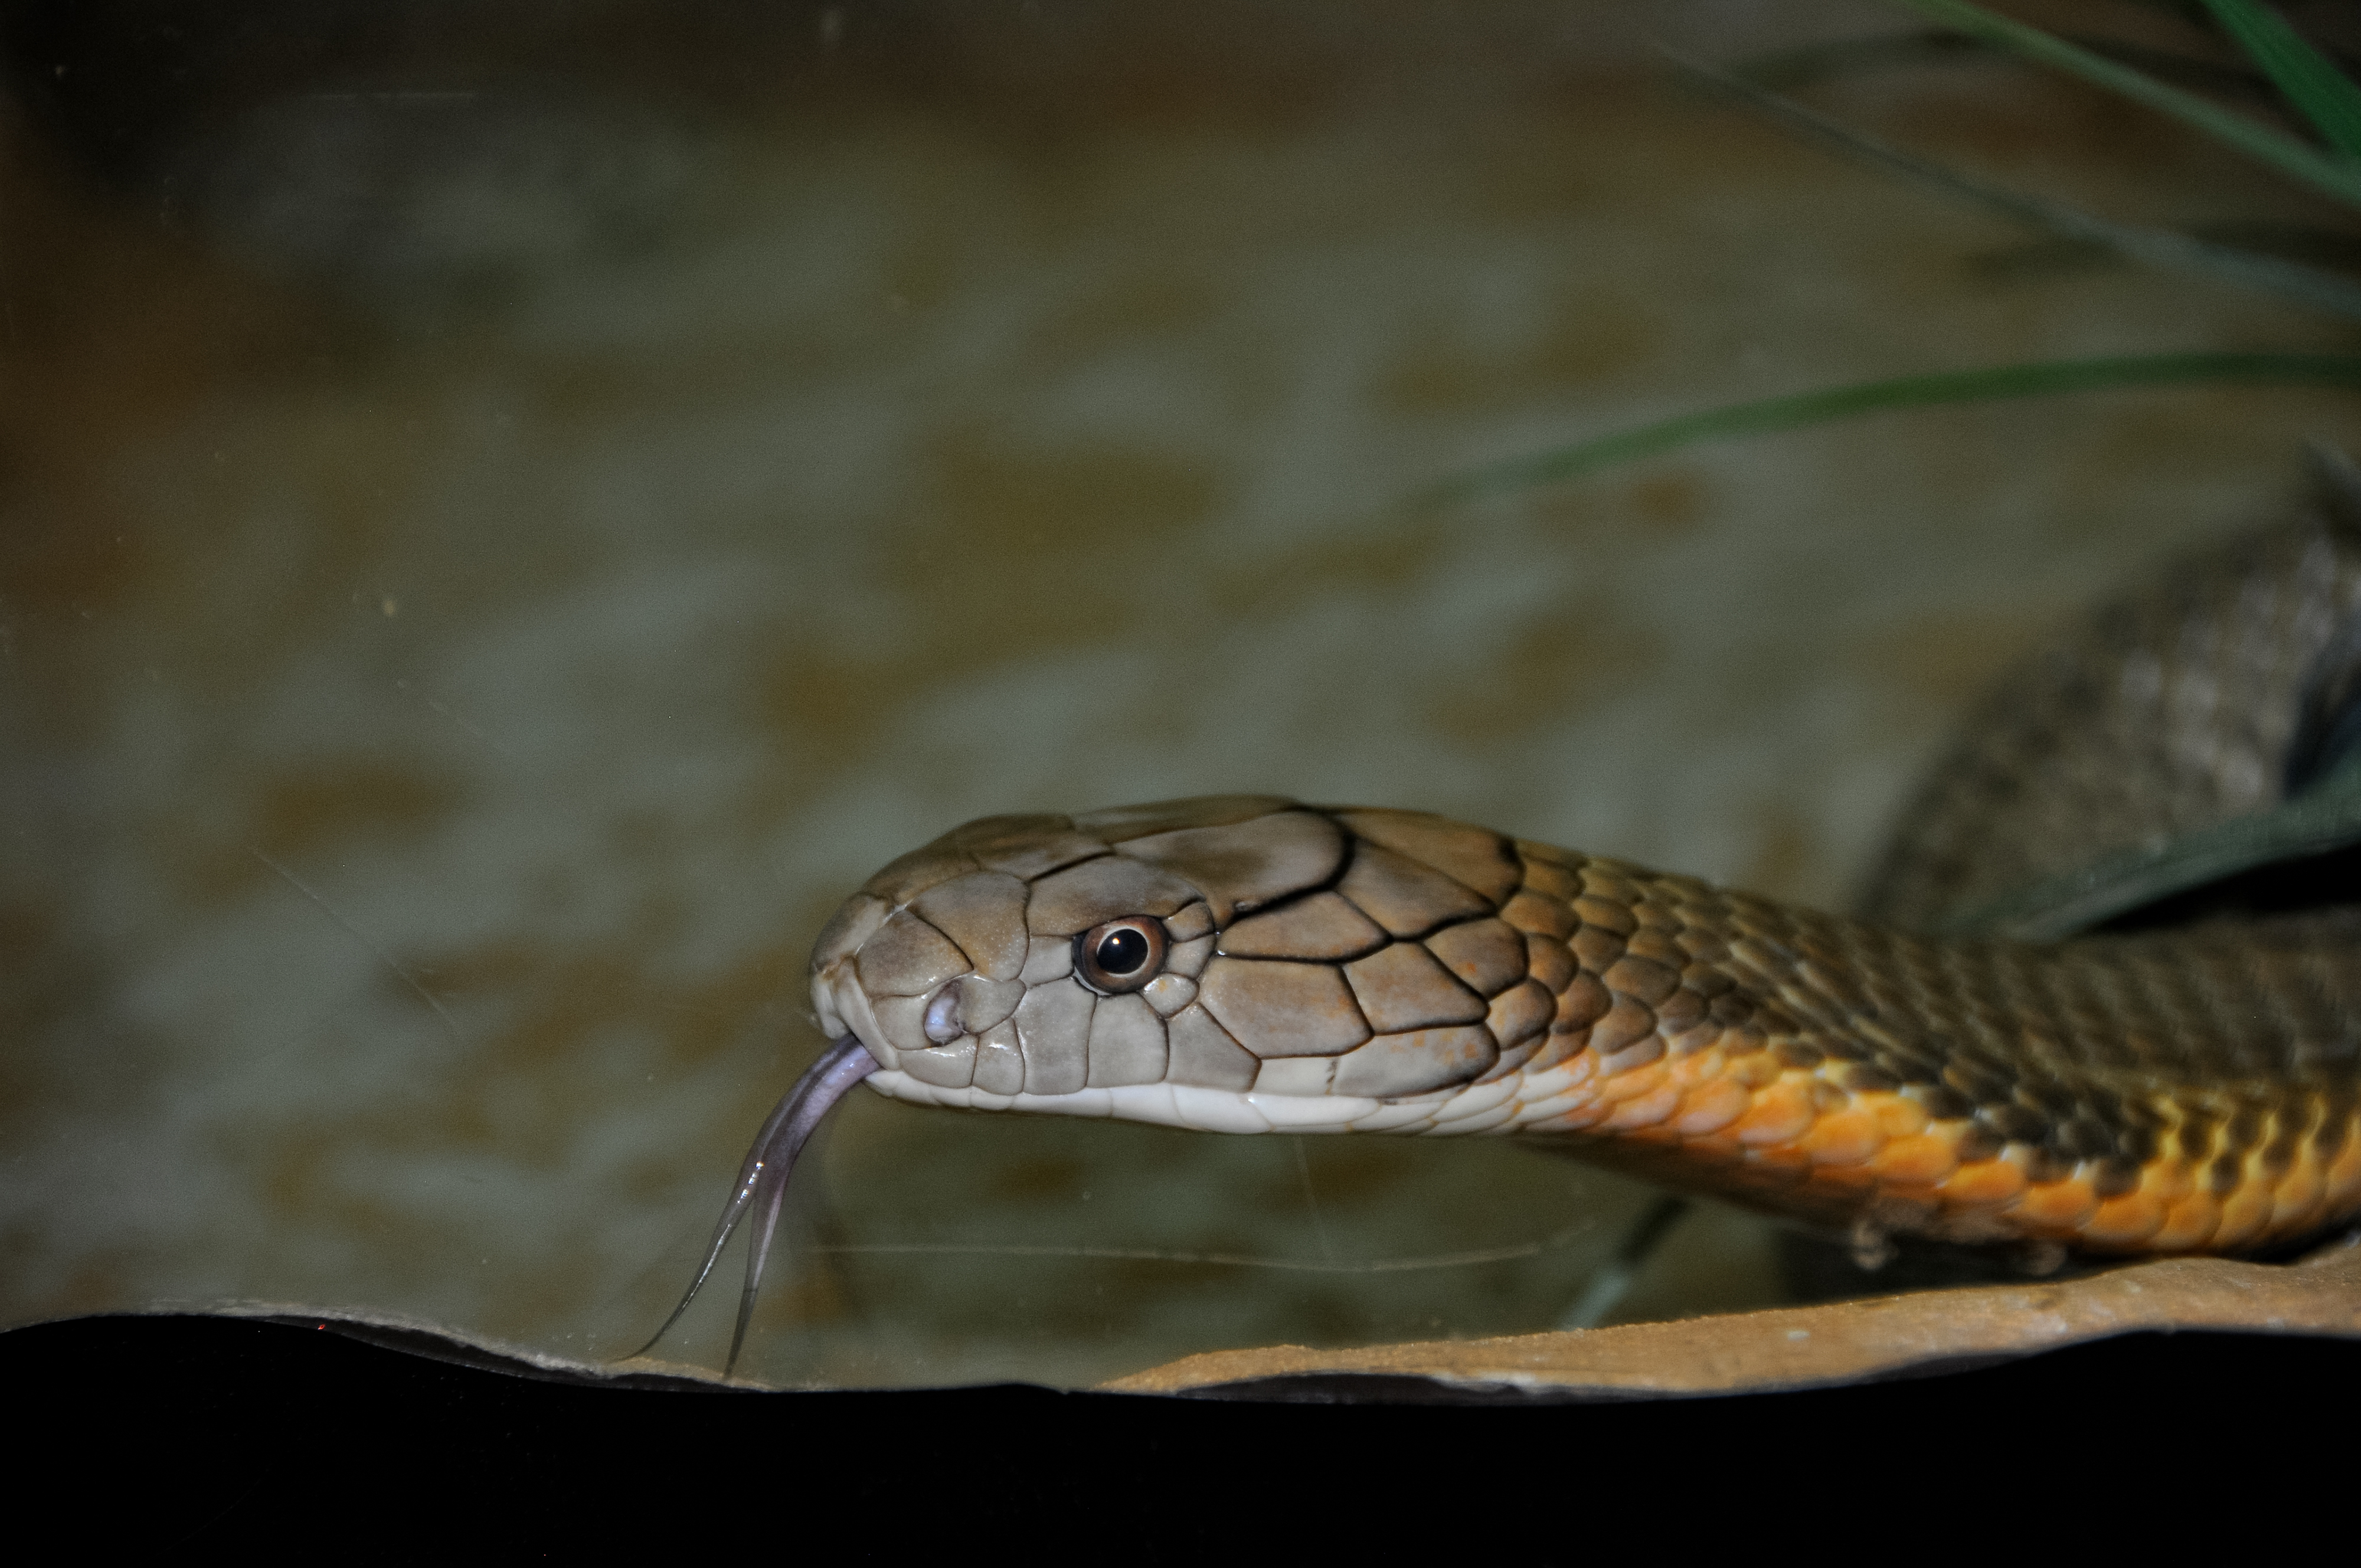 king-cobra-snake-farm-bangkok-photo-4731.jpg